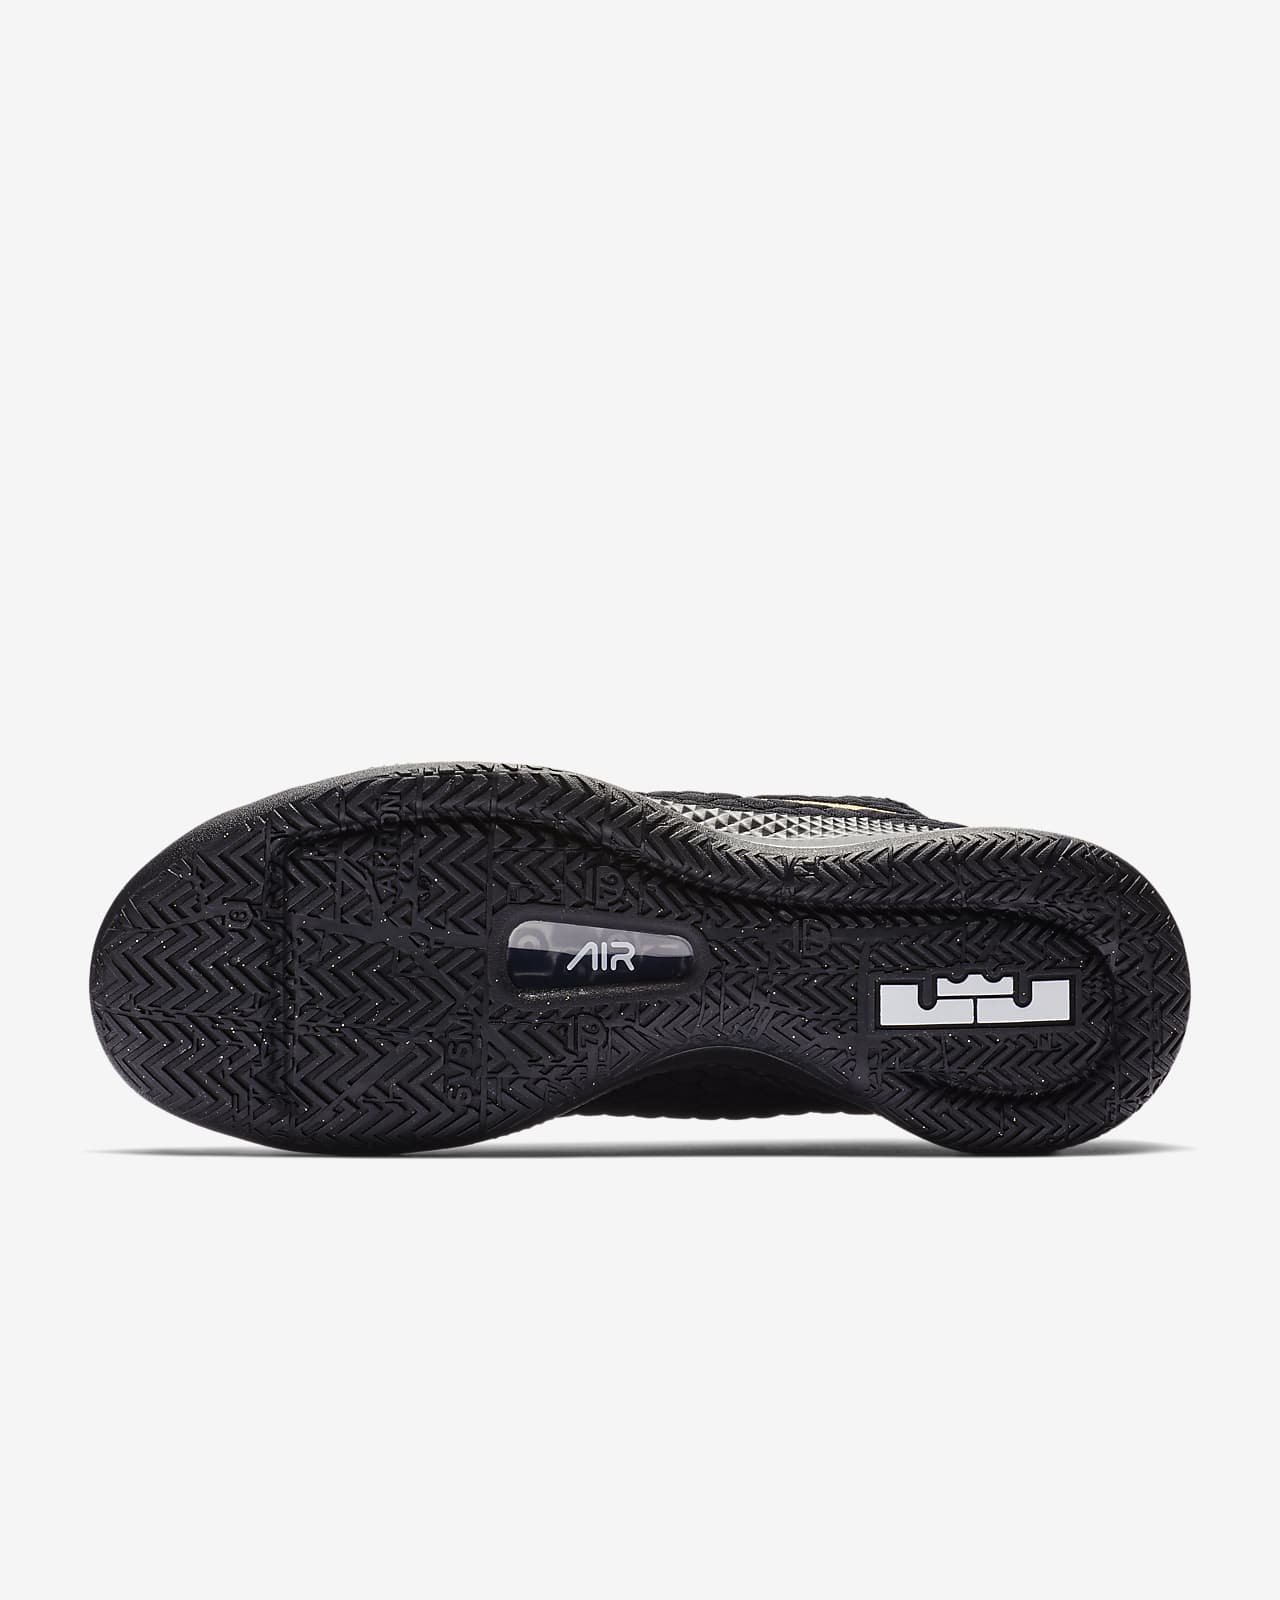 LeBron Witness III Men's Shoe. Nike AU